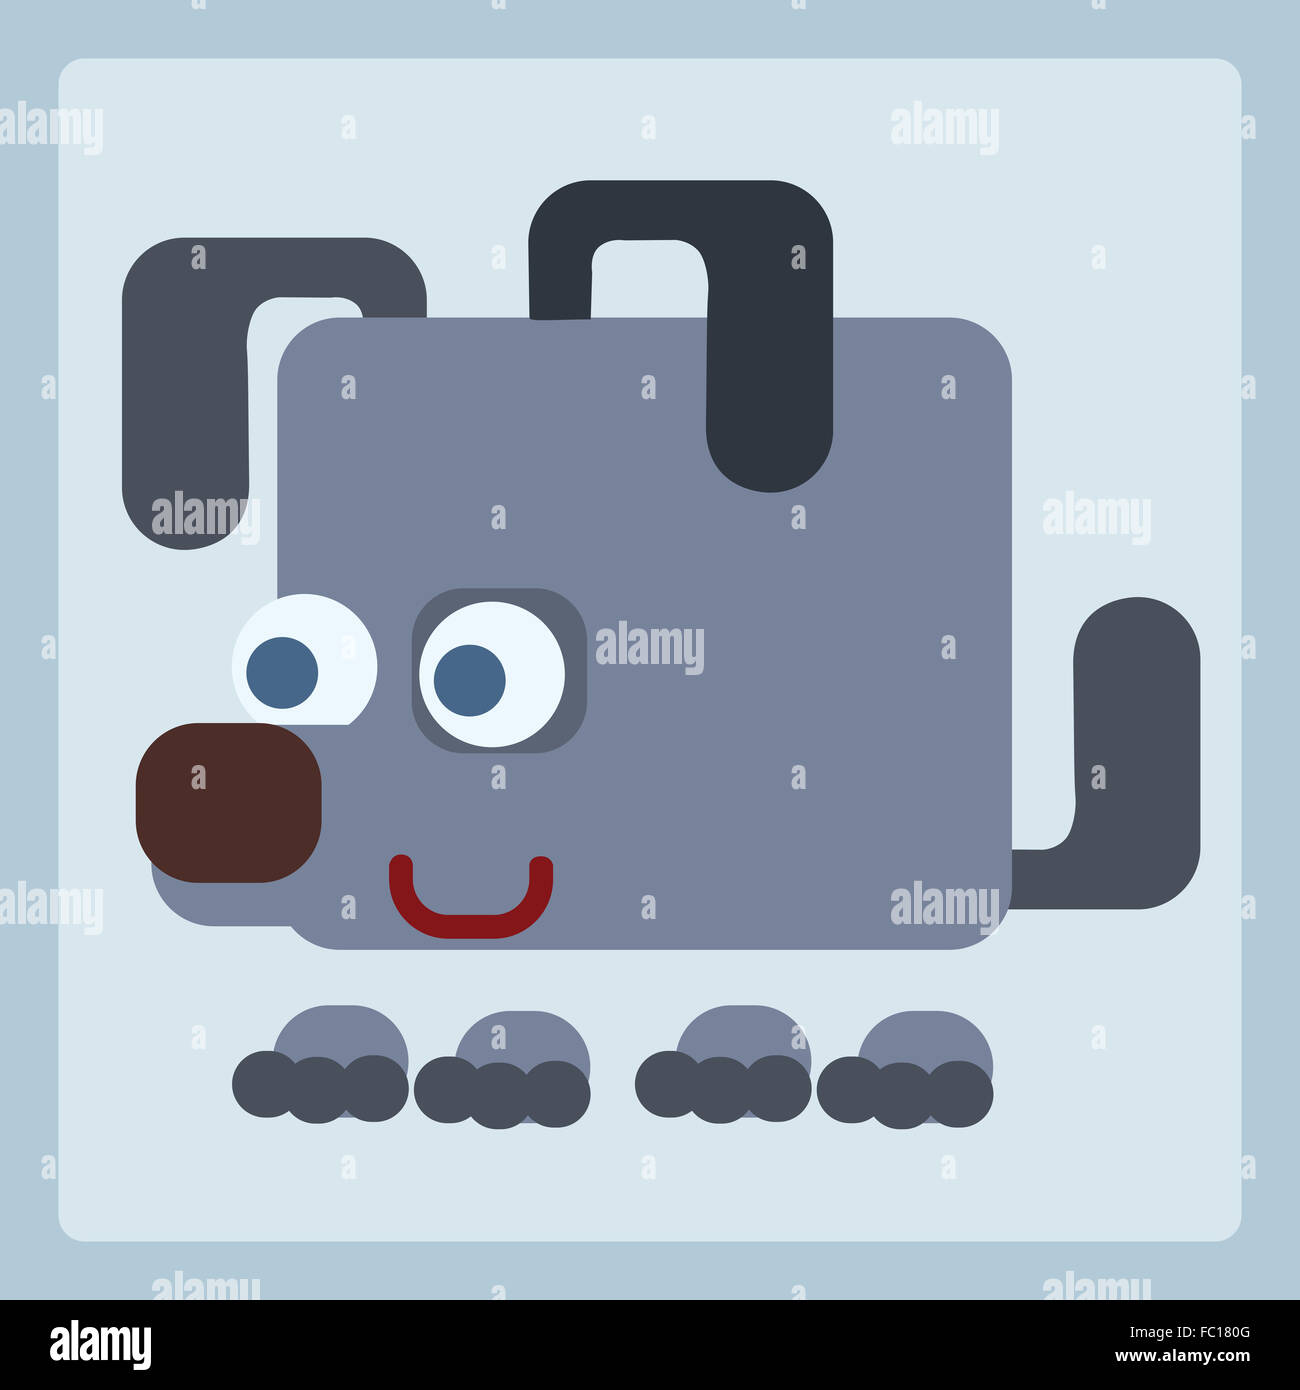 Dog stylized icon symbol Stock Photo